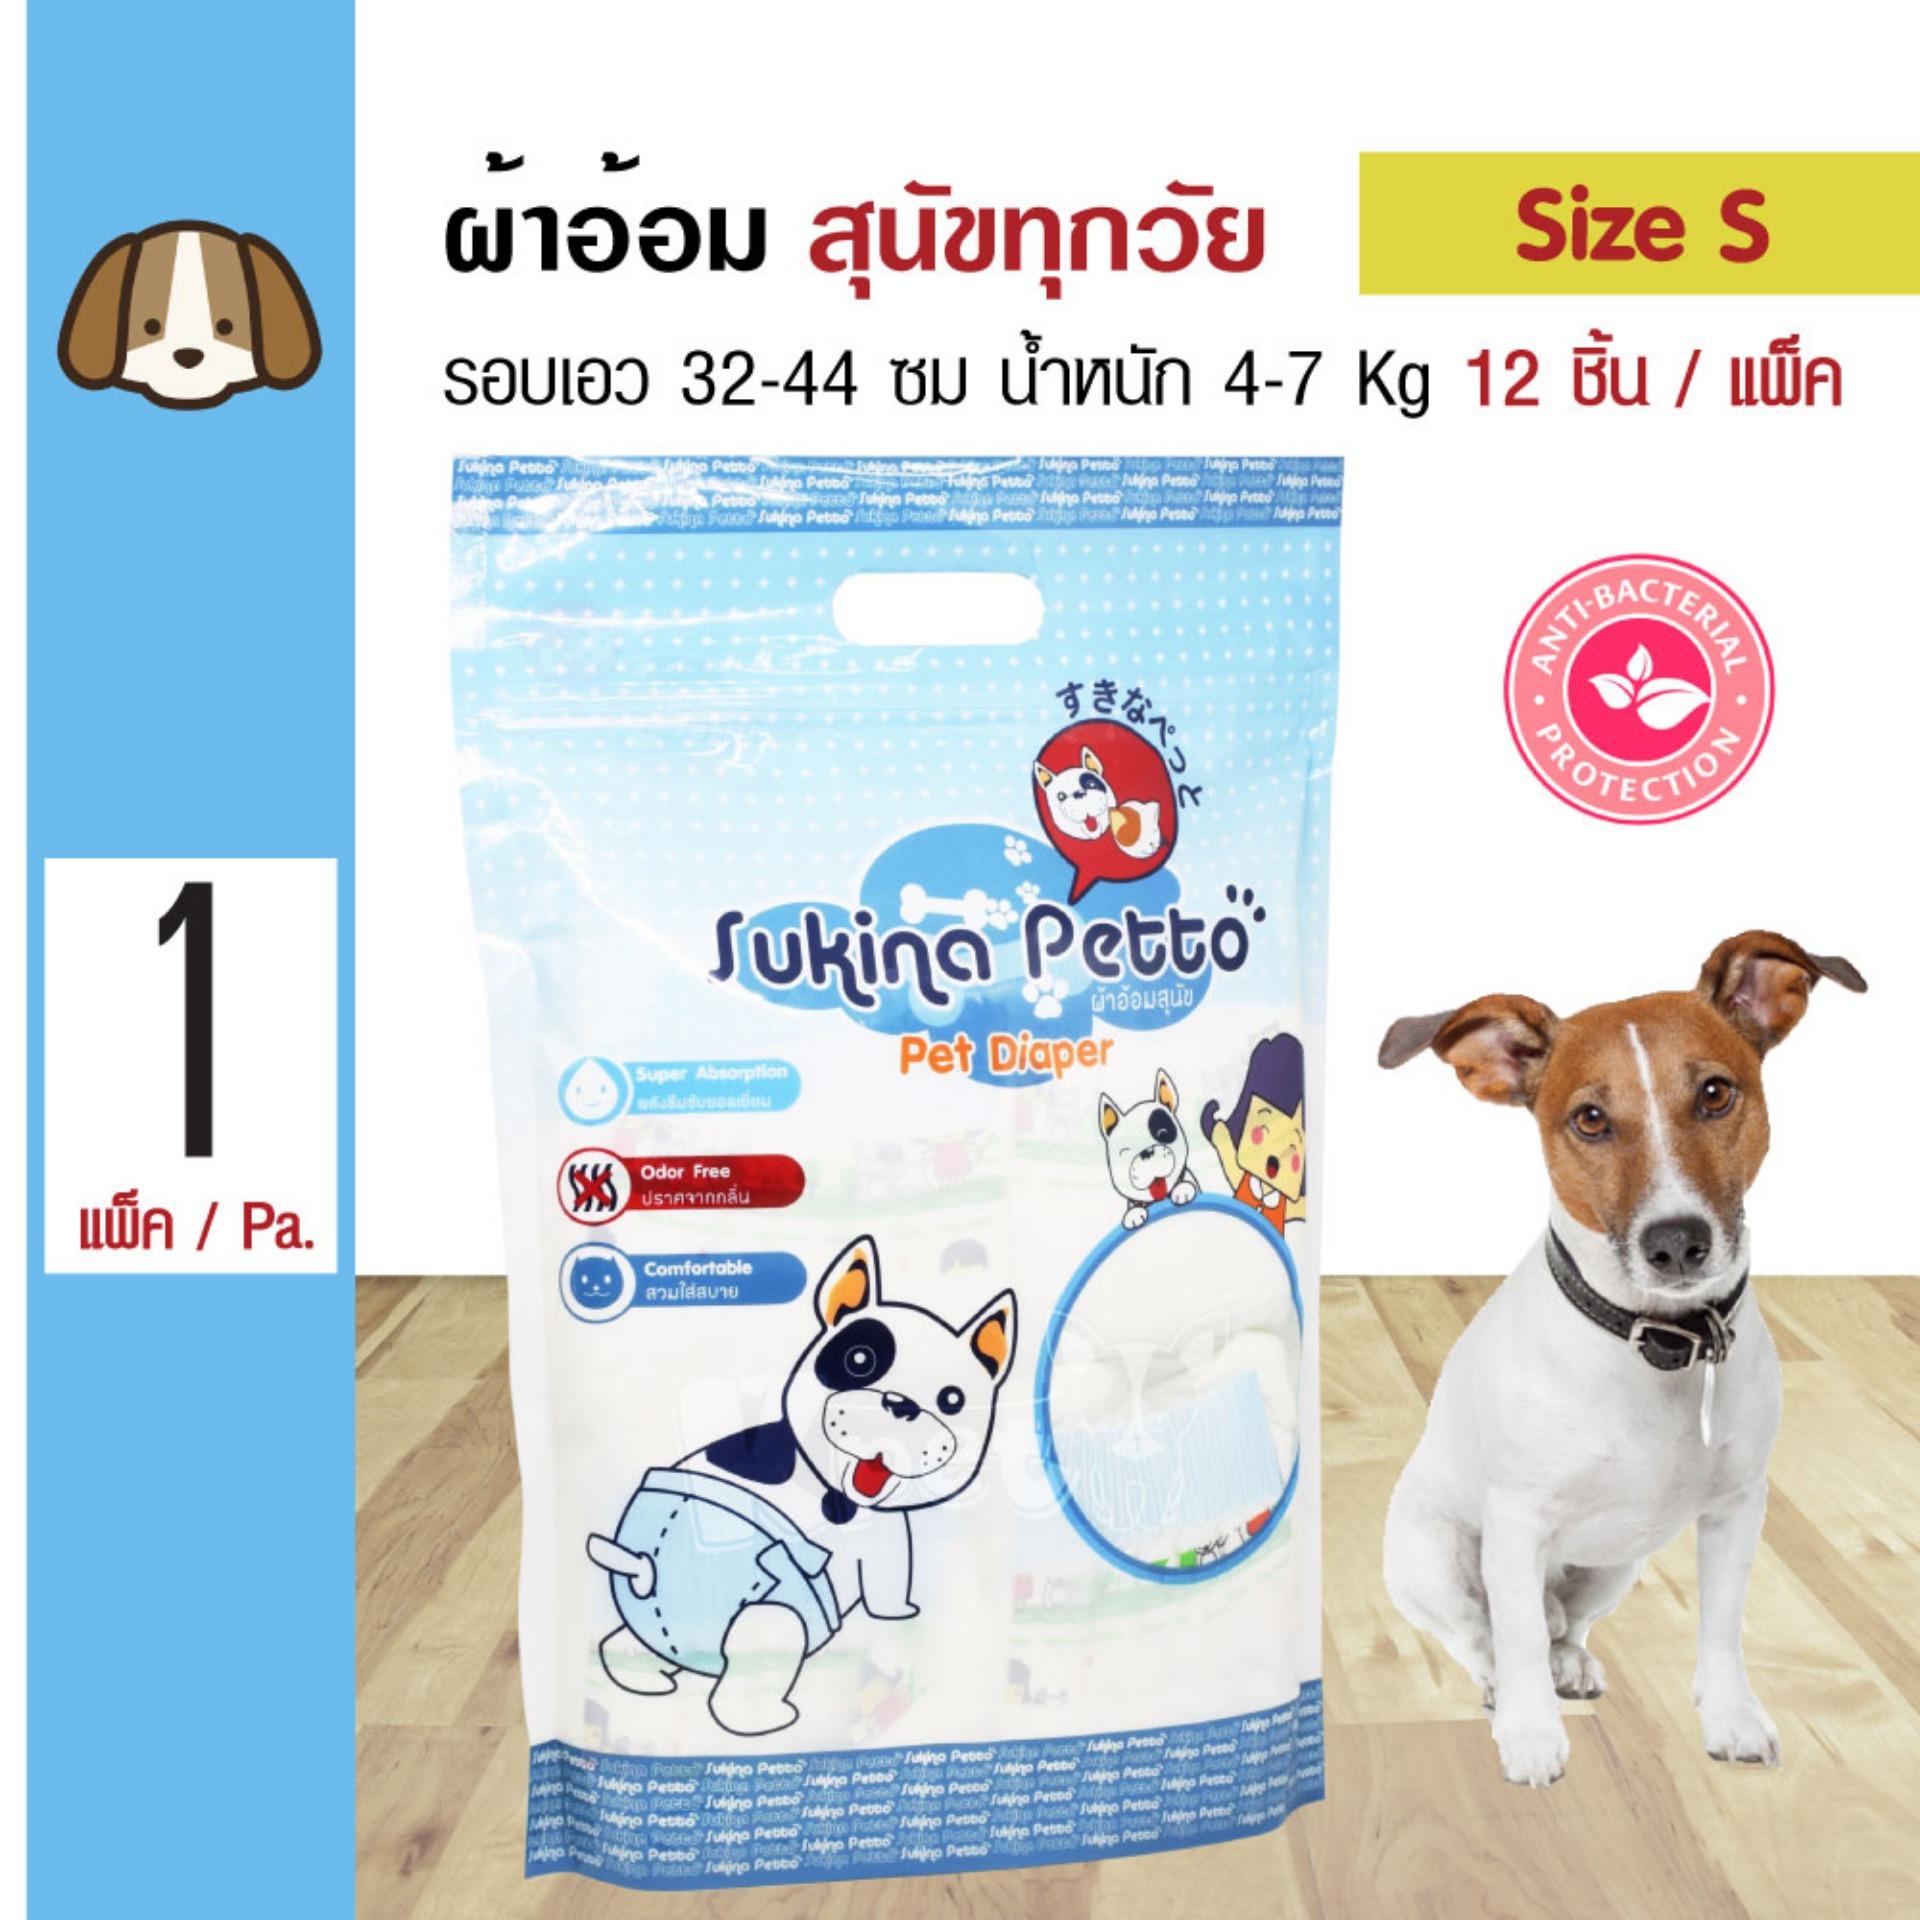 Sukina Petto Diapers ผ้าอ้อมสุนัข ฝึกขับถ่าย Size S สำหรับสุนัขน้ำหนัก 4-7 kg. รอบเอว 32-44 ซม. ความสูง 20 ซม. (12 ชิ้น/แพ็ค)